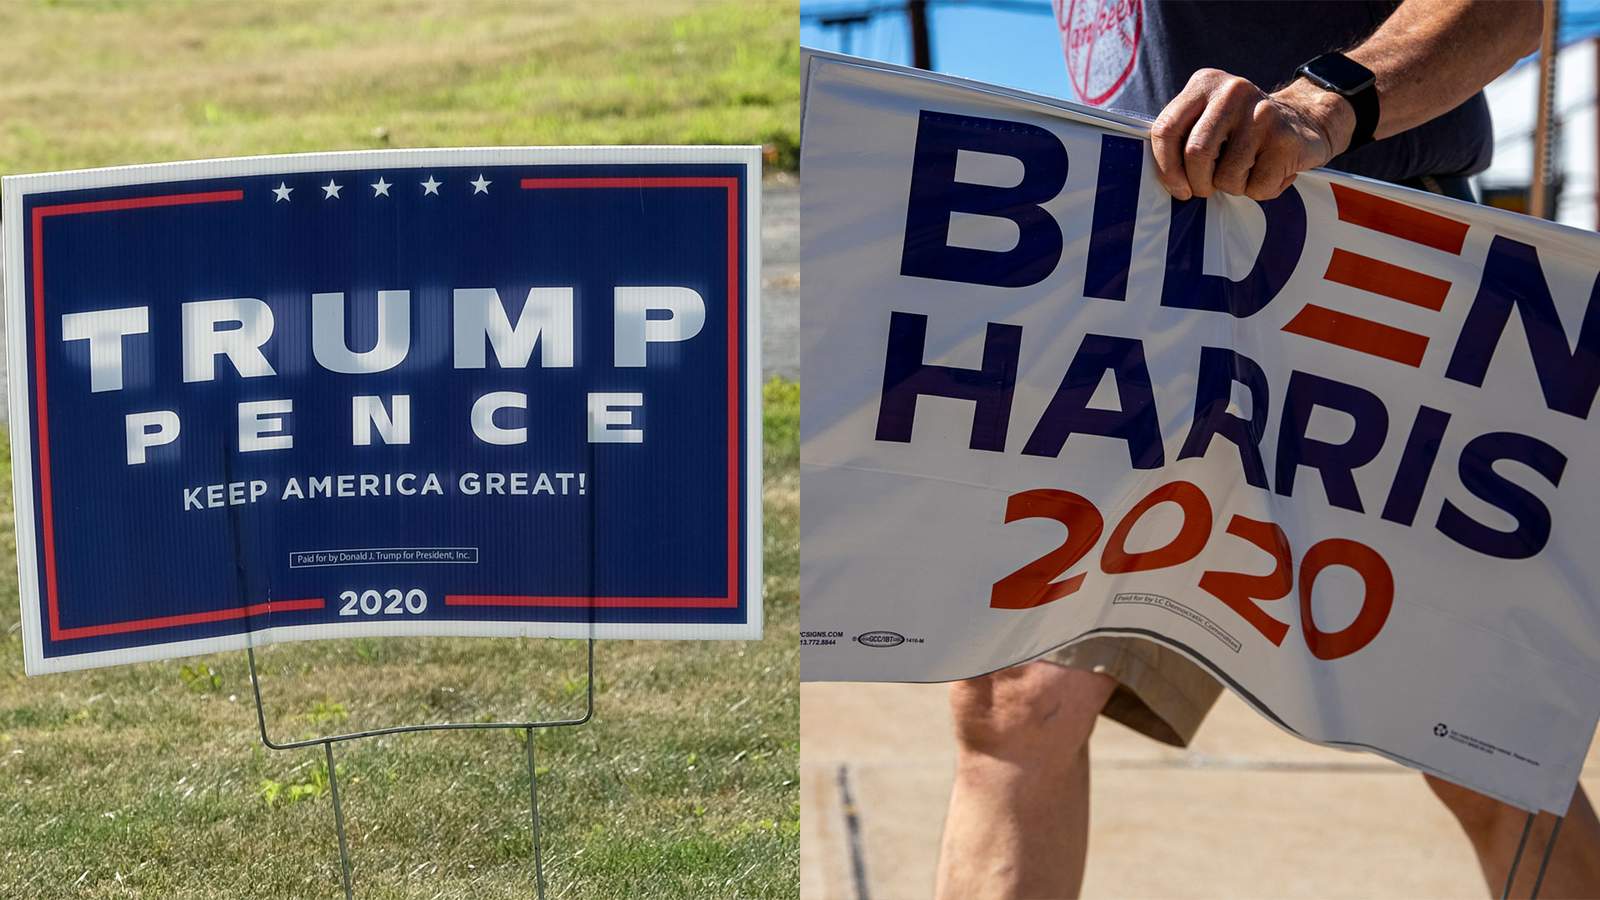 Trump, Biden signs being stolen, vandalized in Southwest Virginia